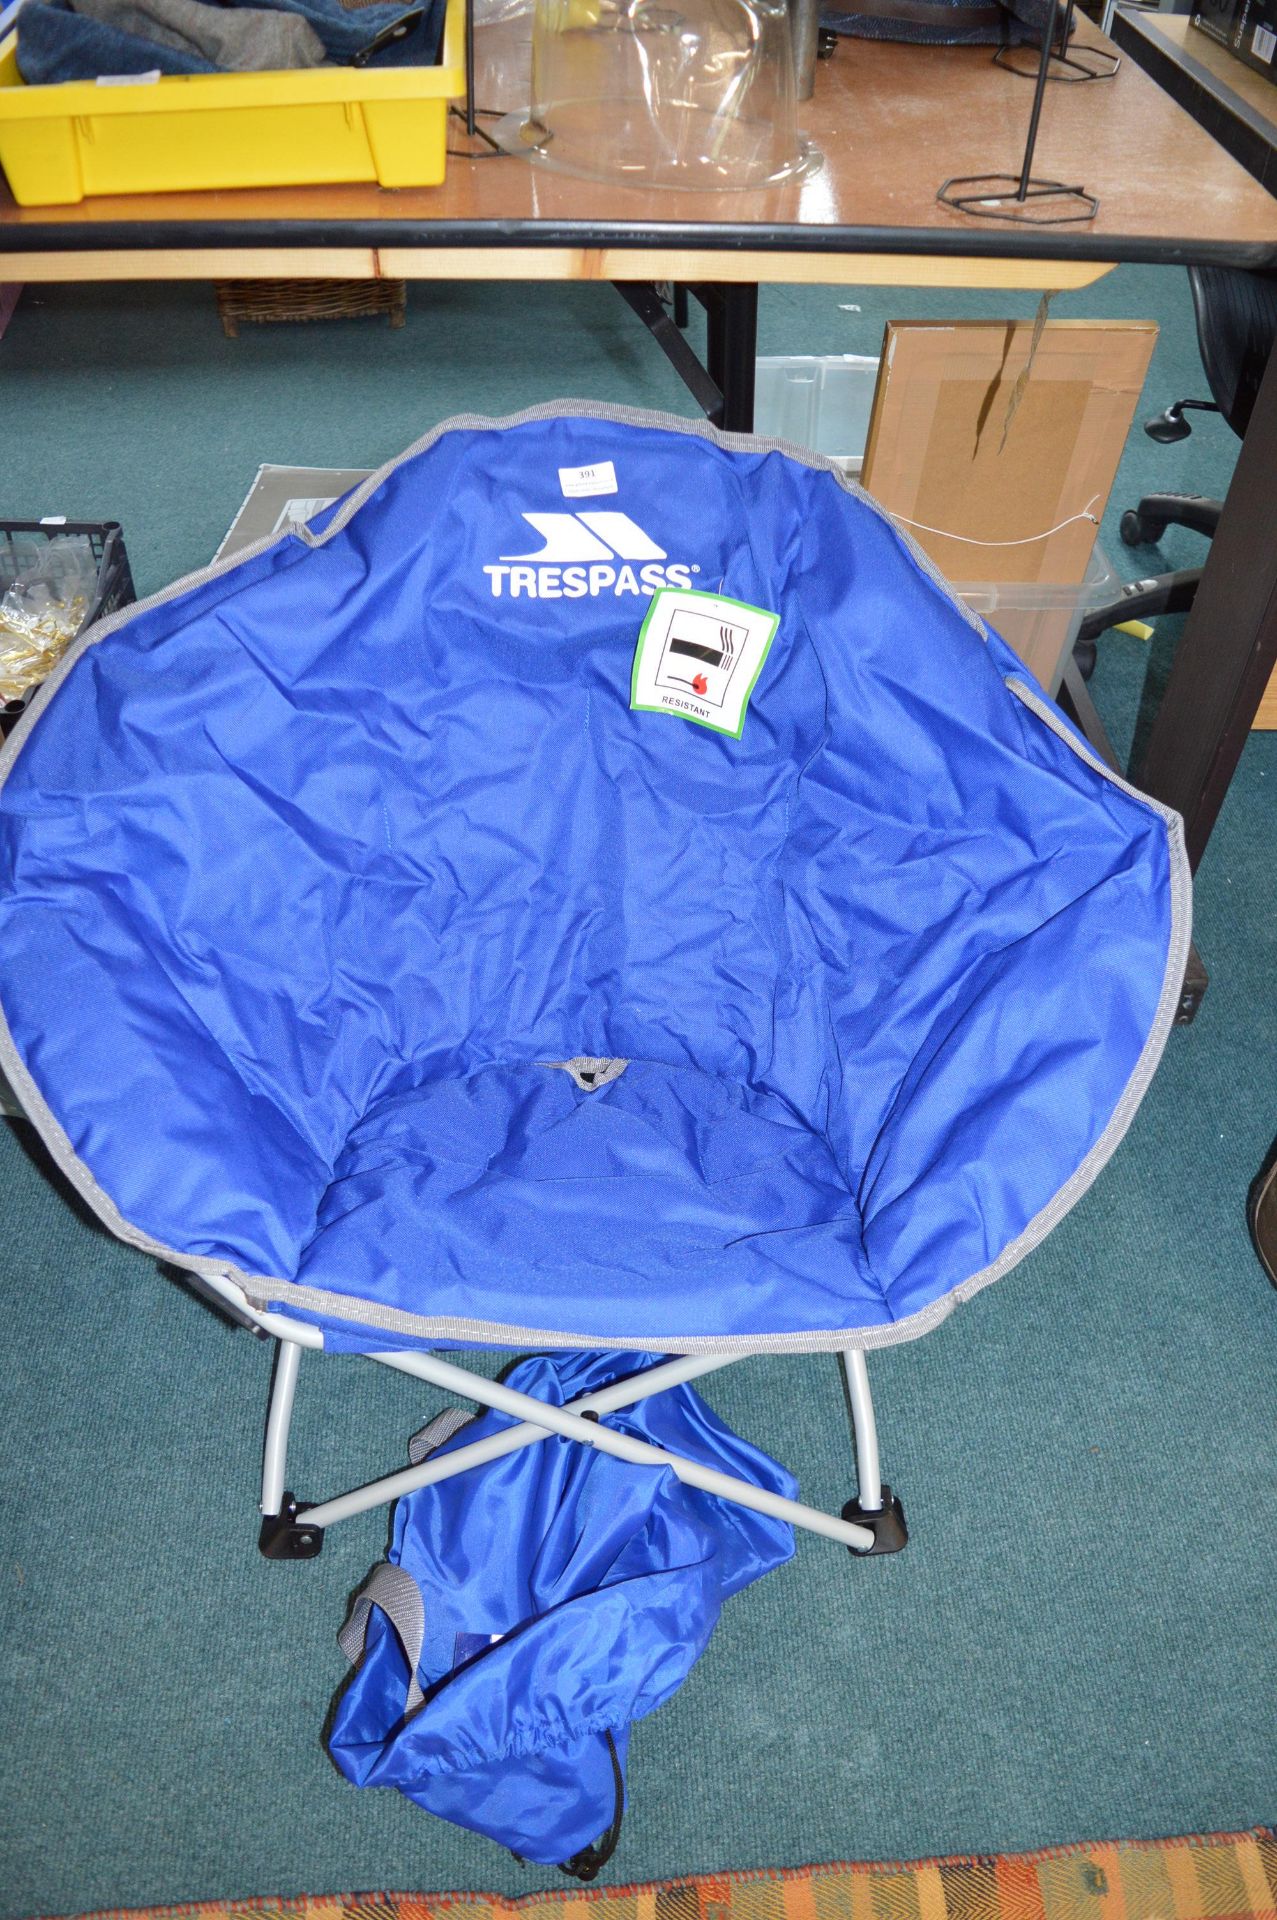 Trespass Folding Camp Chair